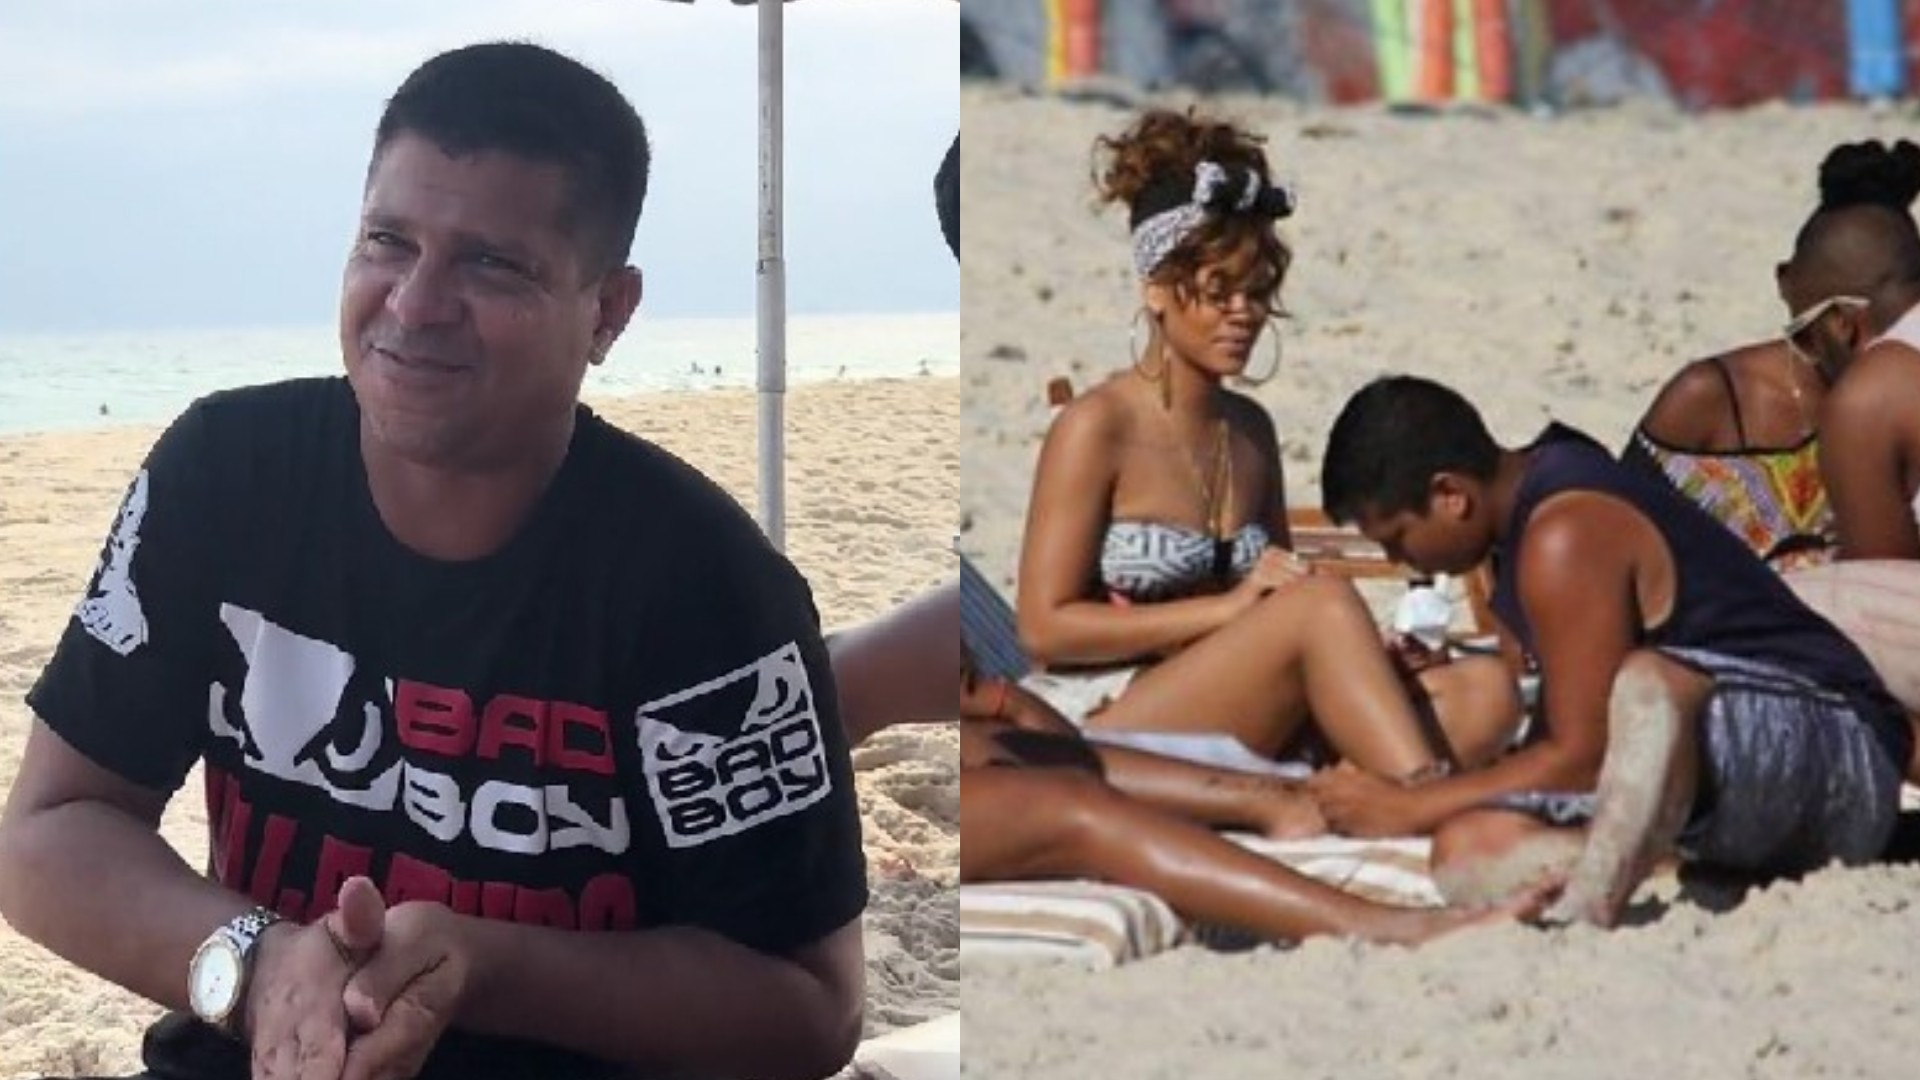 Brasileiro que tatuou Rihanna na praia no RJ viraliza ao narrar encontro e final inusitado; assista